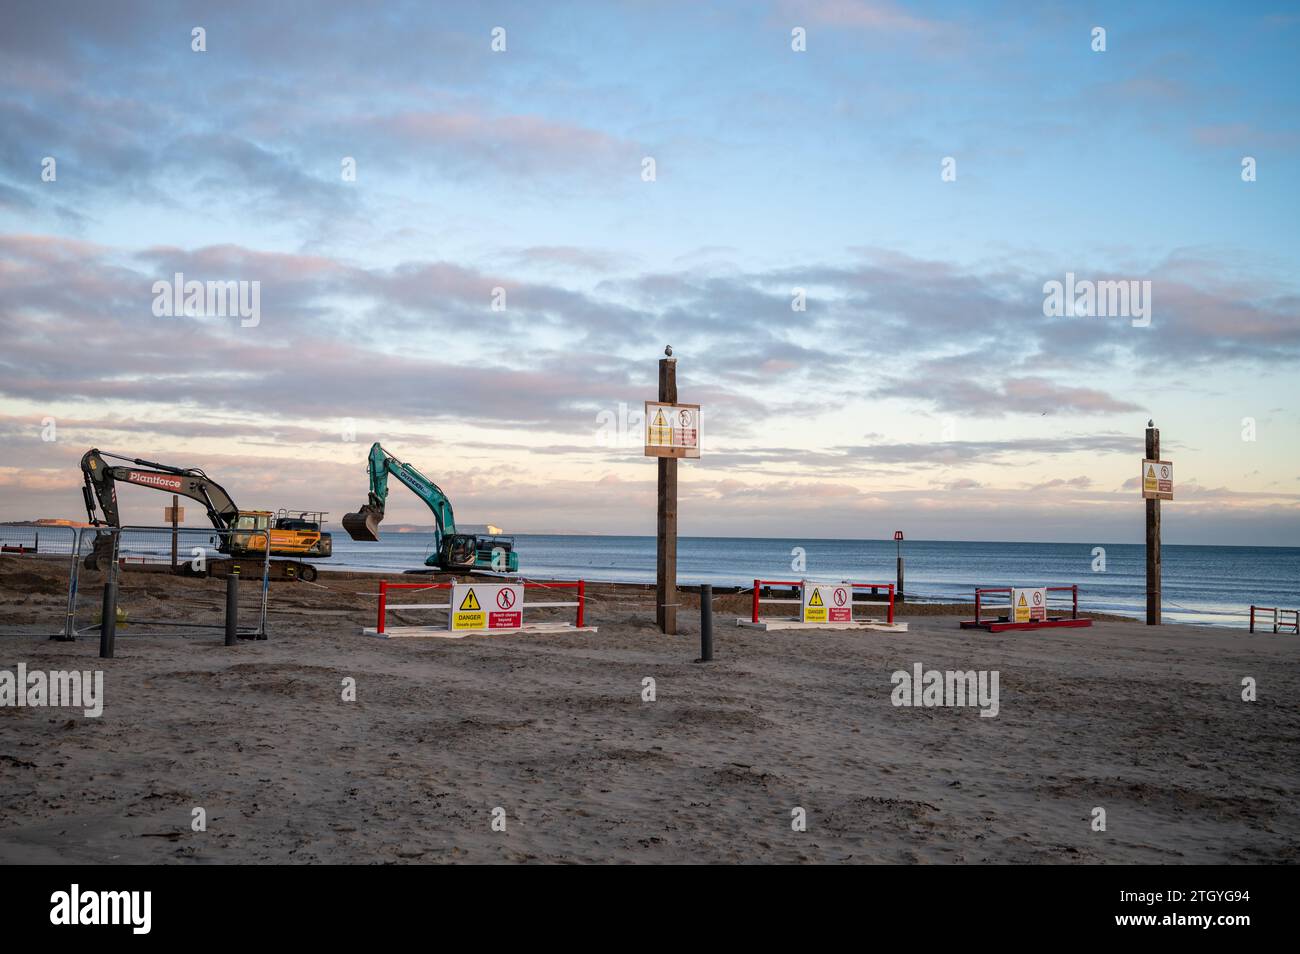 La spiaggia di Bournemouth, che si occupa della manutenzione, organizza la sabbia intorno a nuove barriere lungo la costa Foto Stock